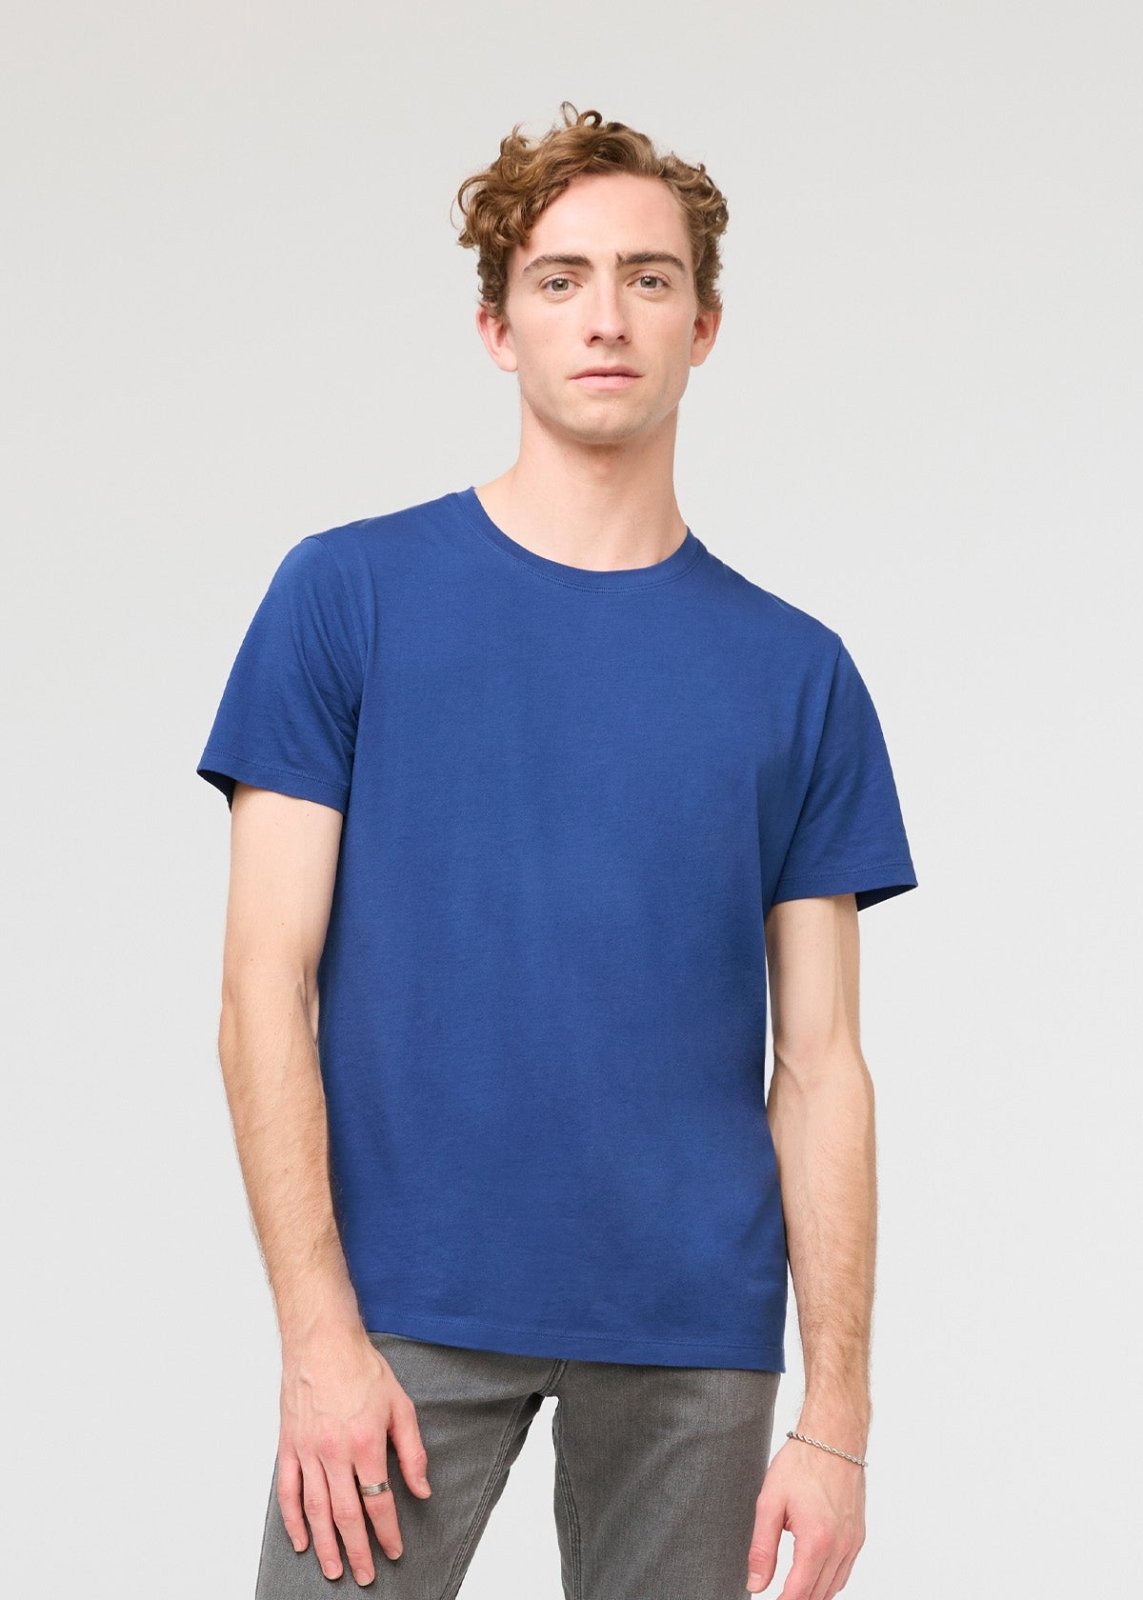 mens 100% pima cotton blue t-shirt front